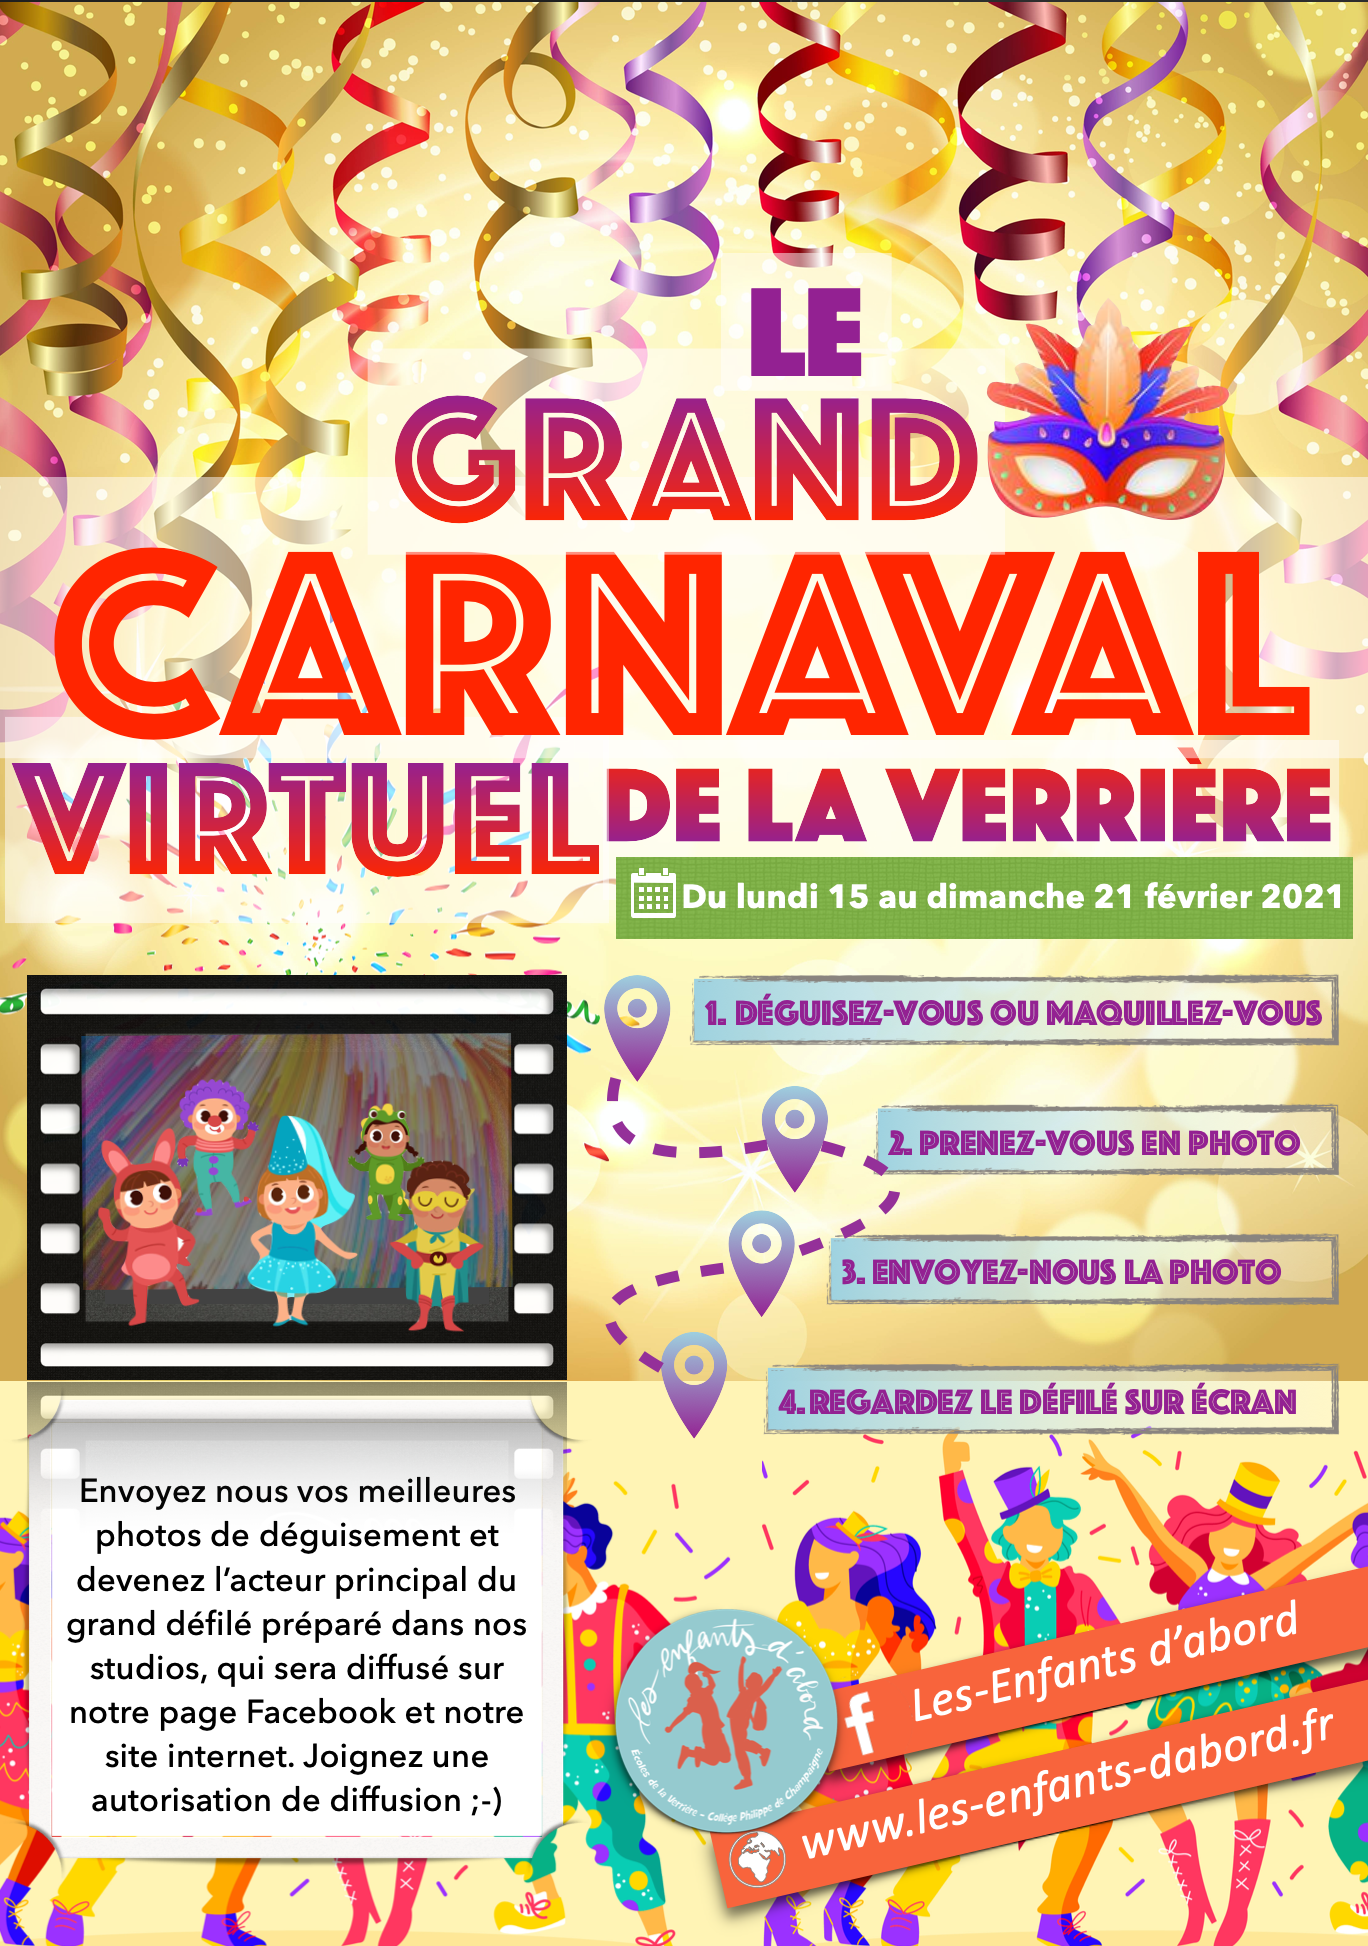 Le grand carnaval virtuel de La Verrière